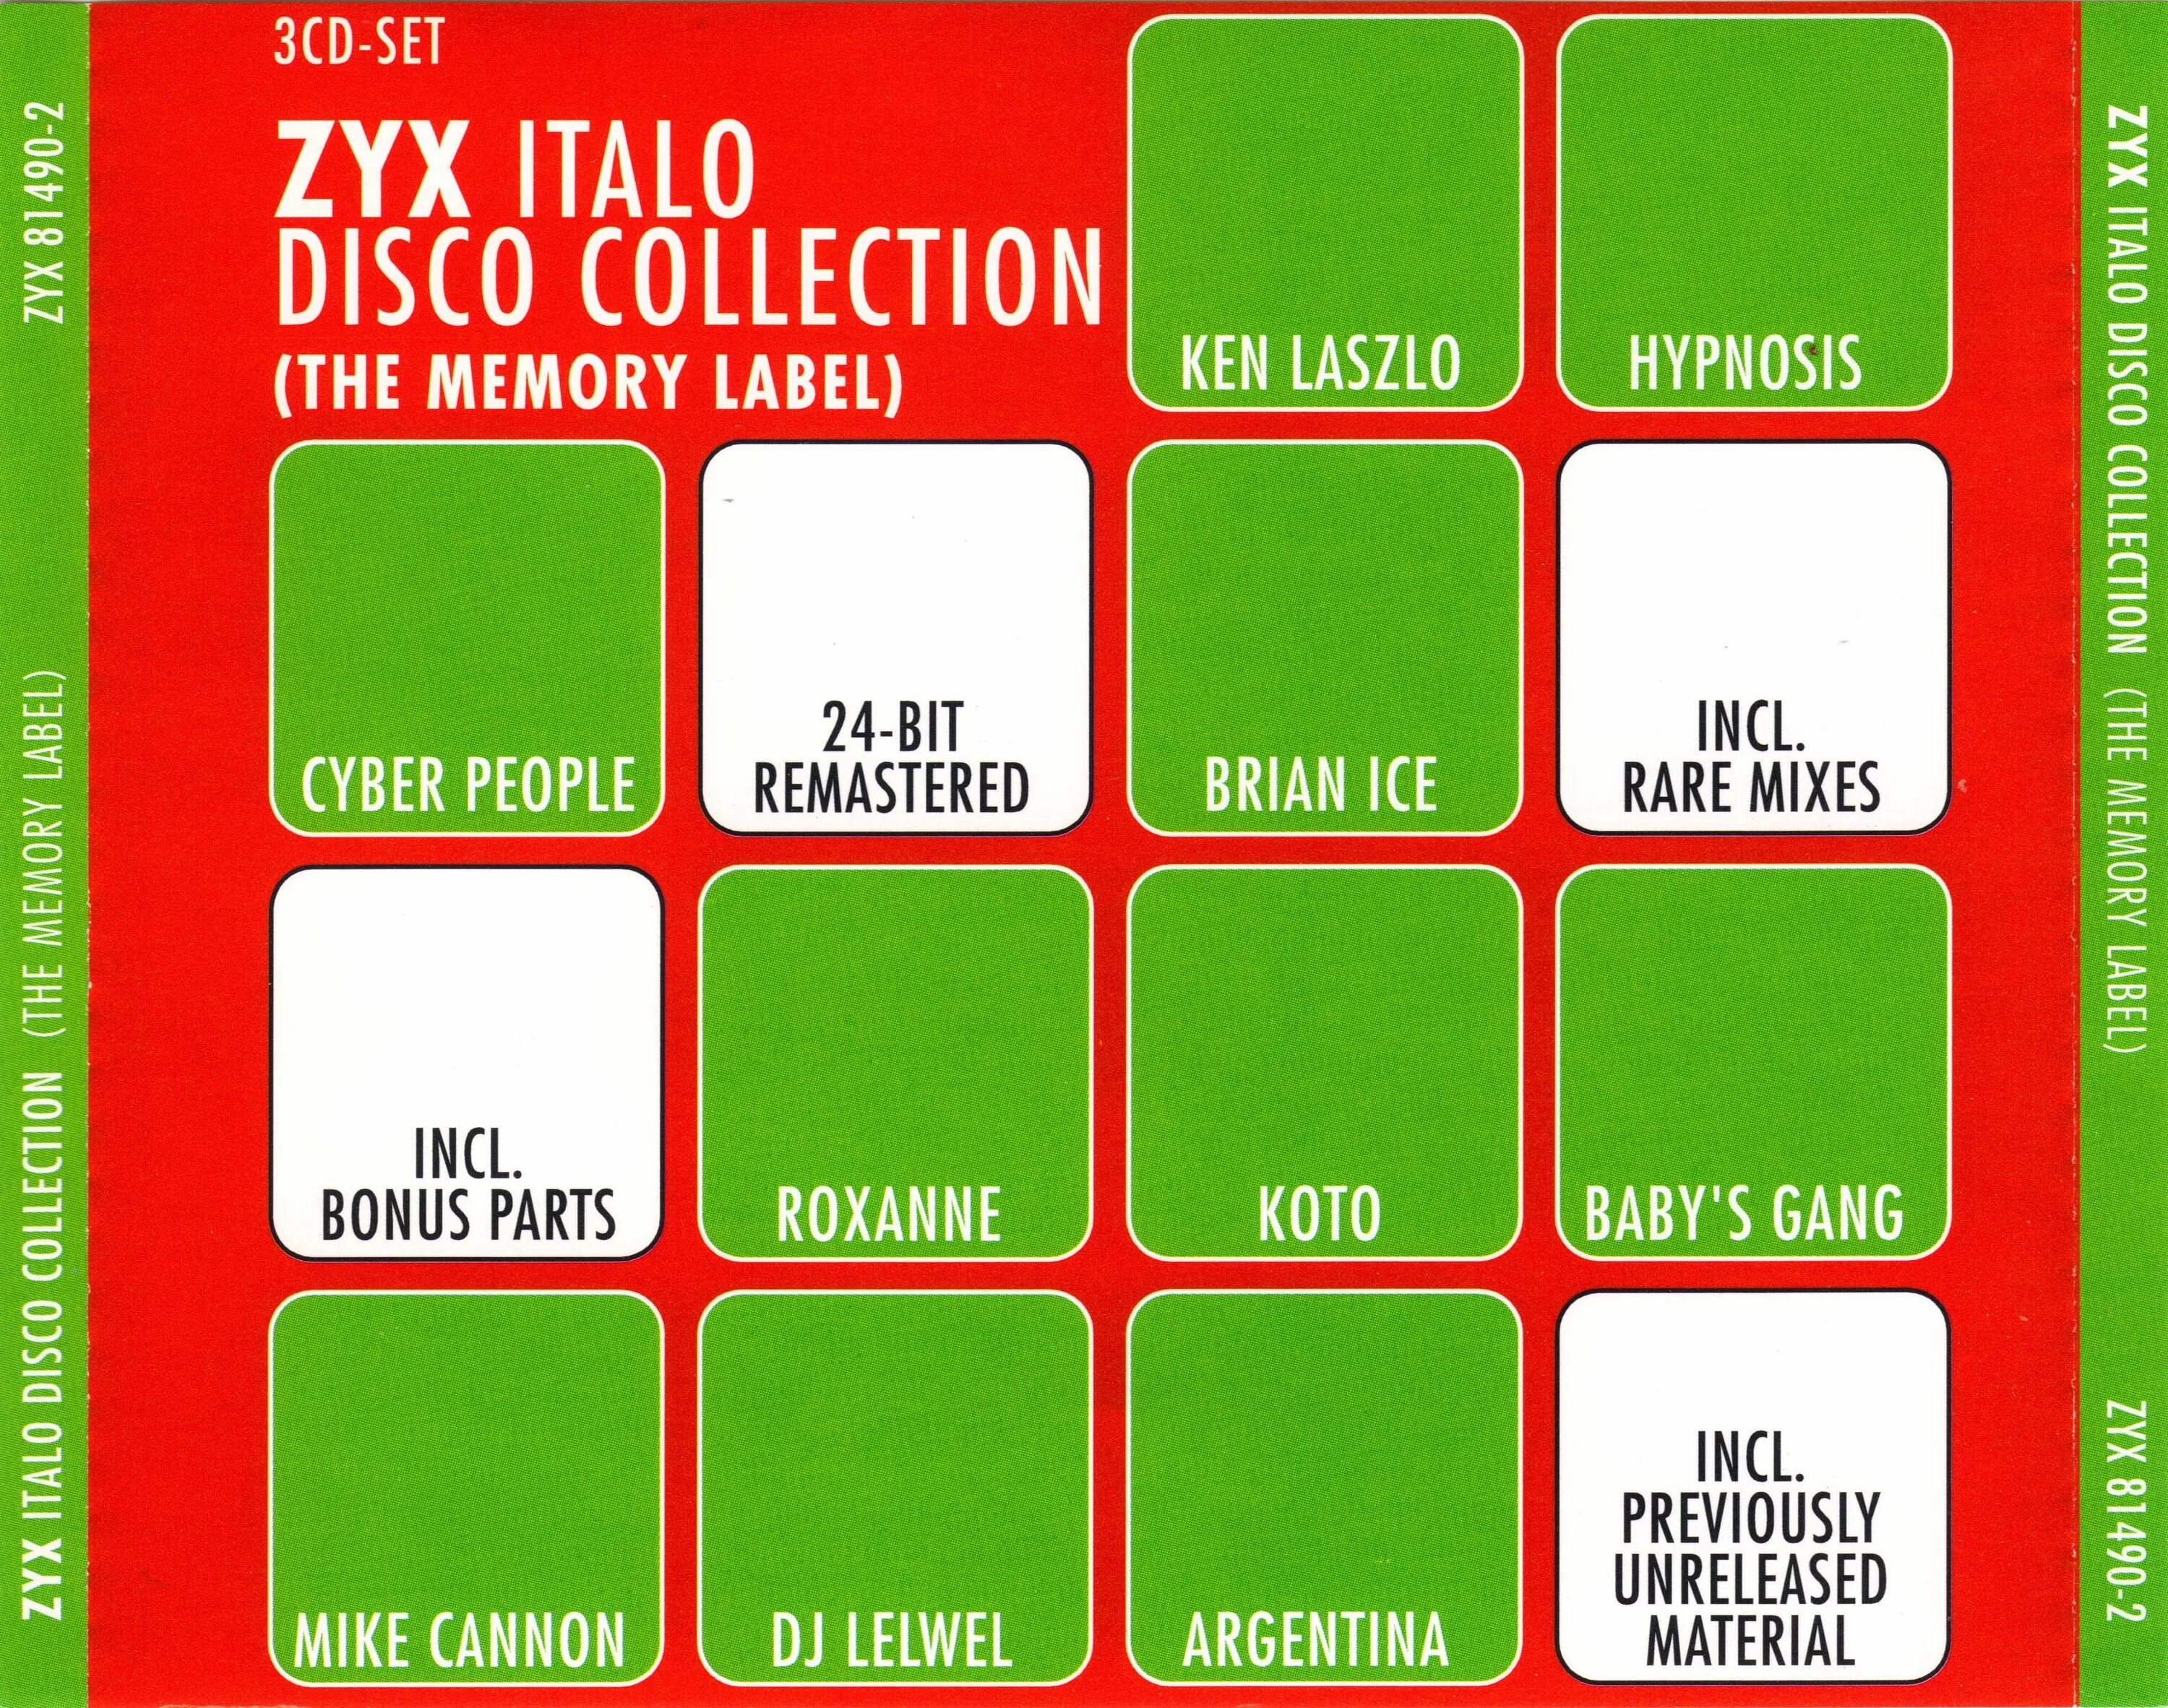 Italo disco collection. I Love ZYX Italo Disco collection 20. Collection of Italo Disco Vol 1. Cyber people ZYX Italo Disco collection (the Memory Label) cd1. I Love ZYX Italo Disco collection 16.